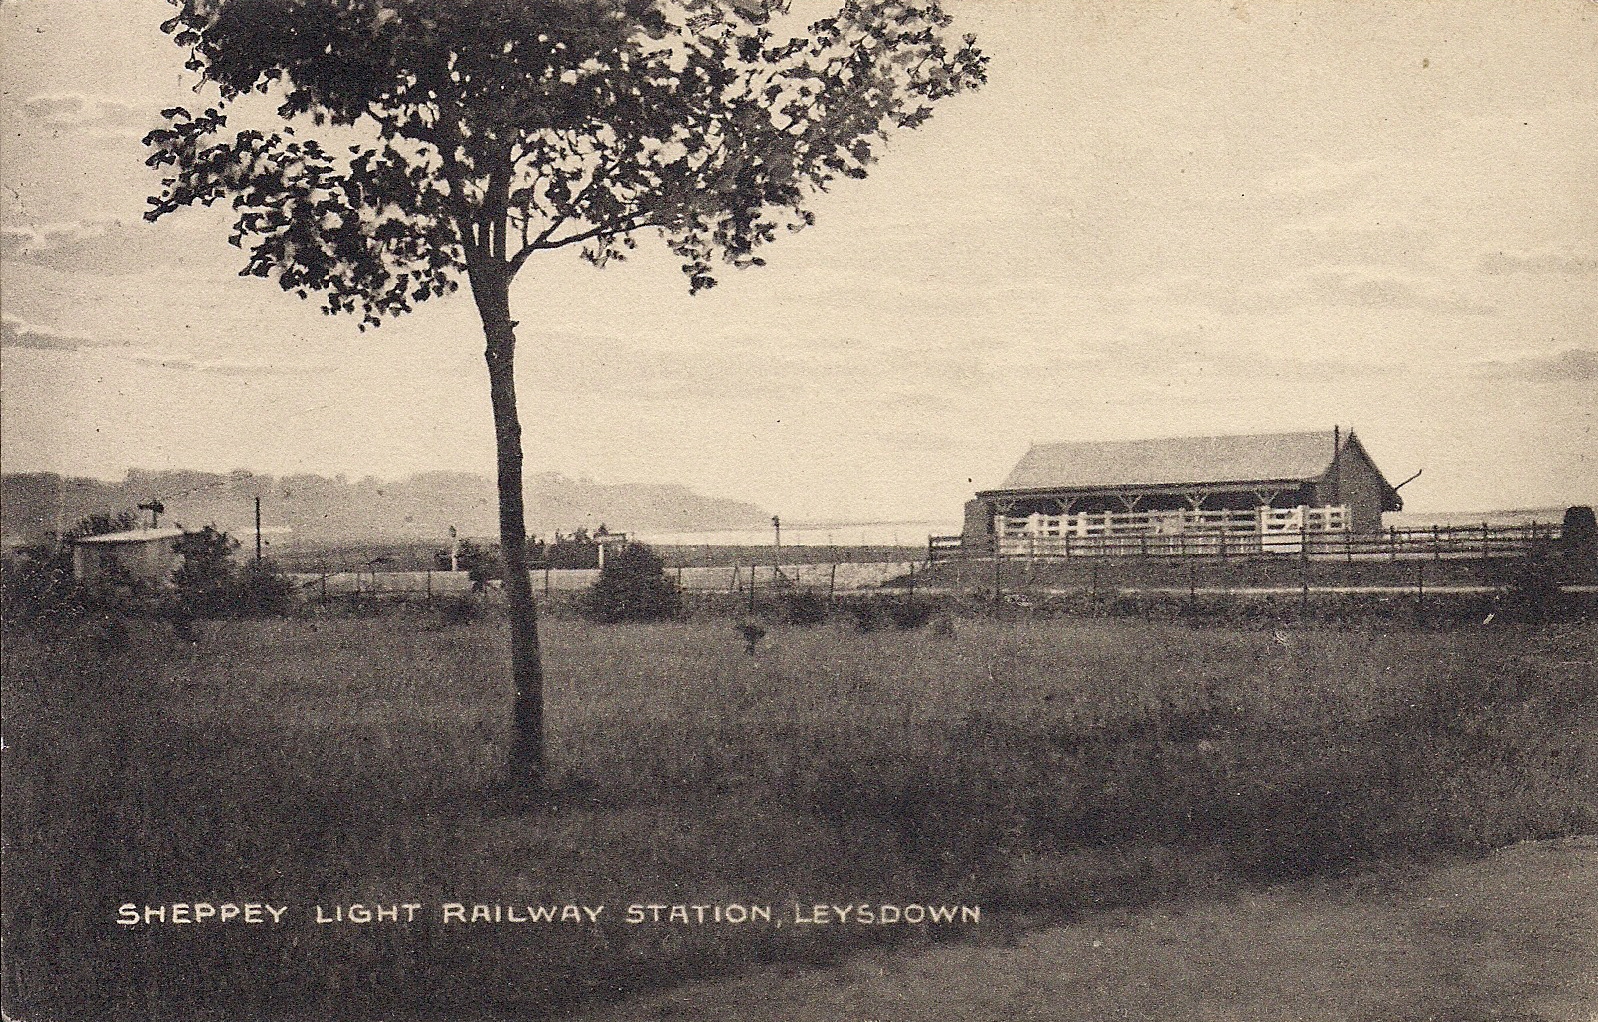 Leysdown railway station